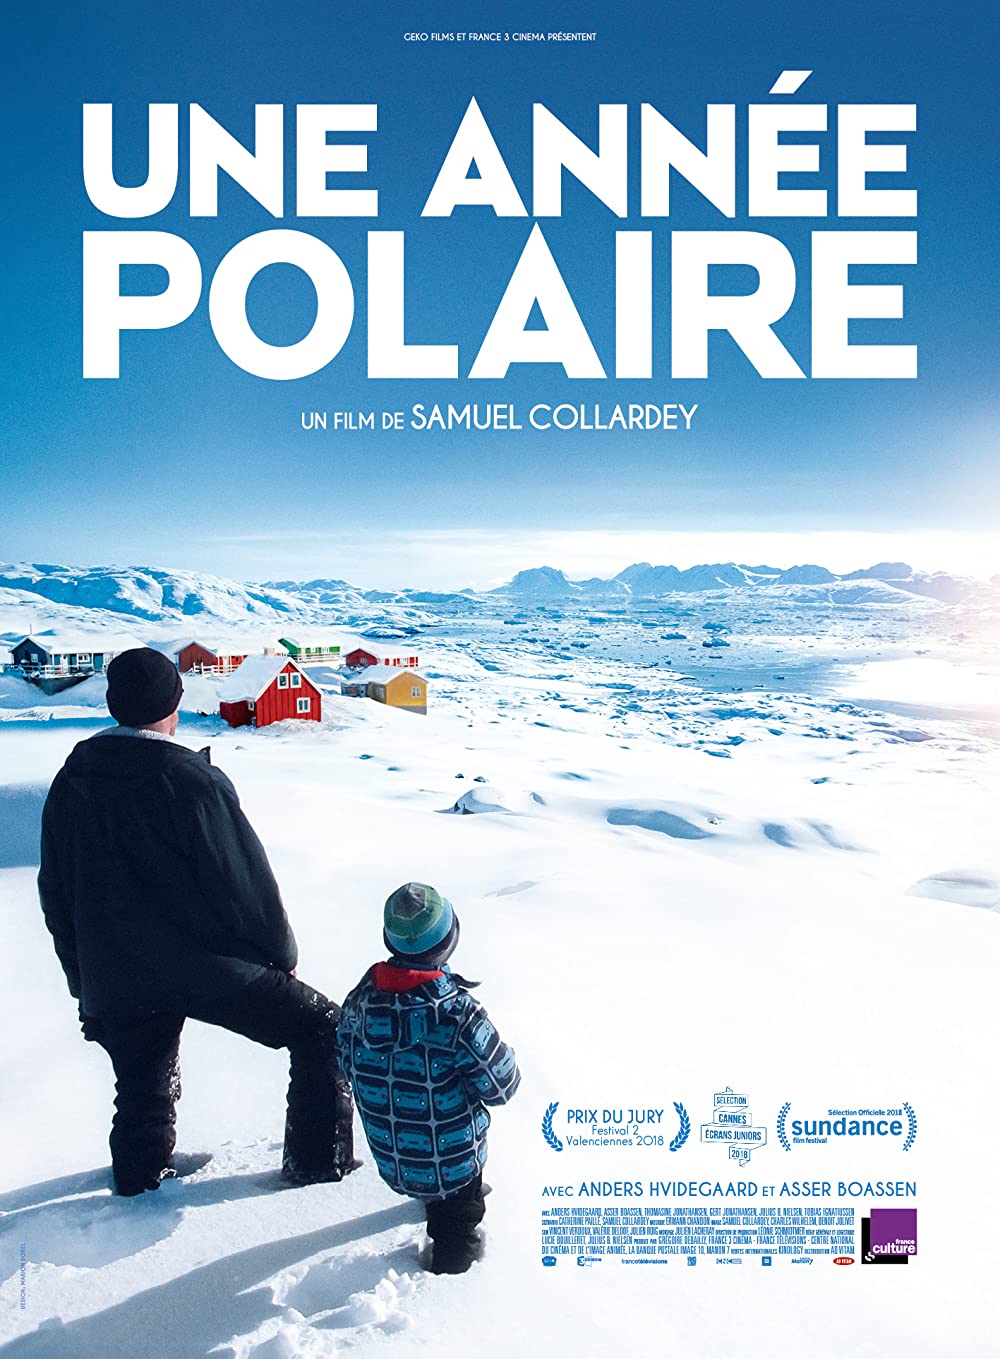 Filmbeschreibung zu Une année polaire